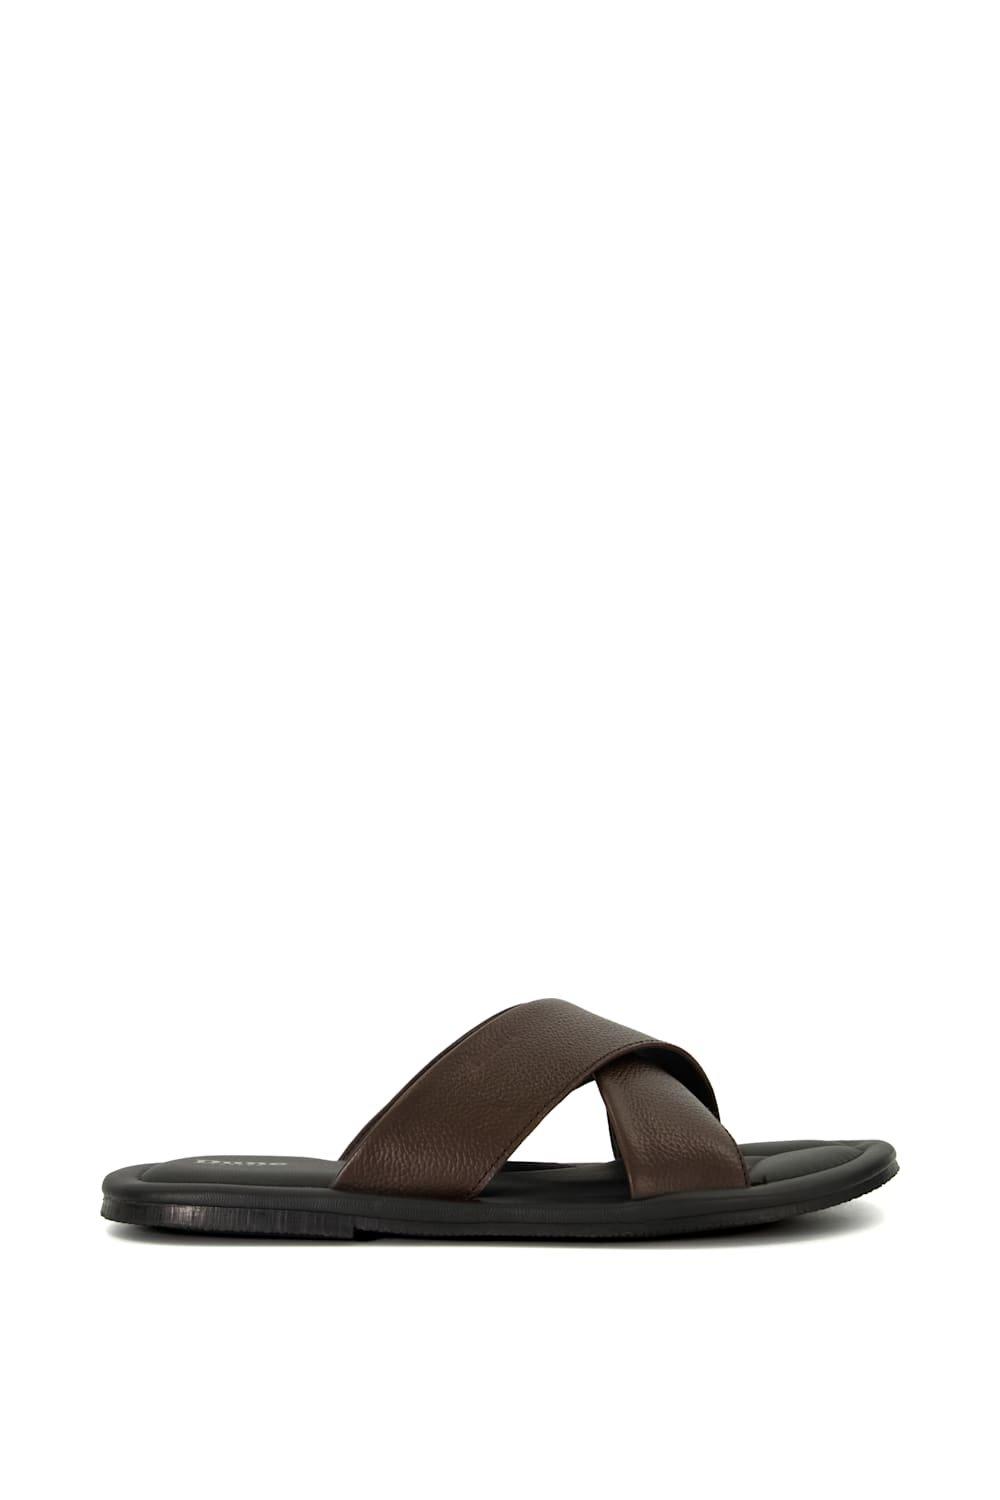 Кожаные сандалии Frap Dune London, коричневый